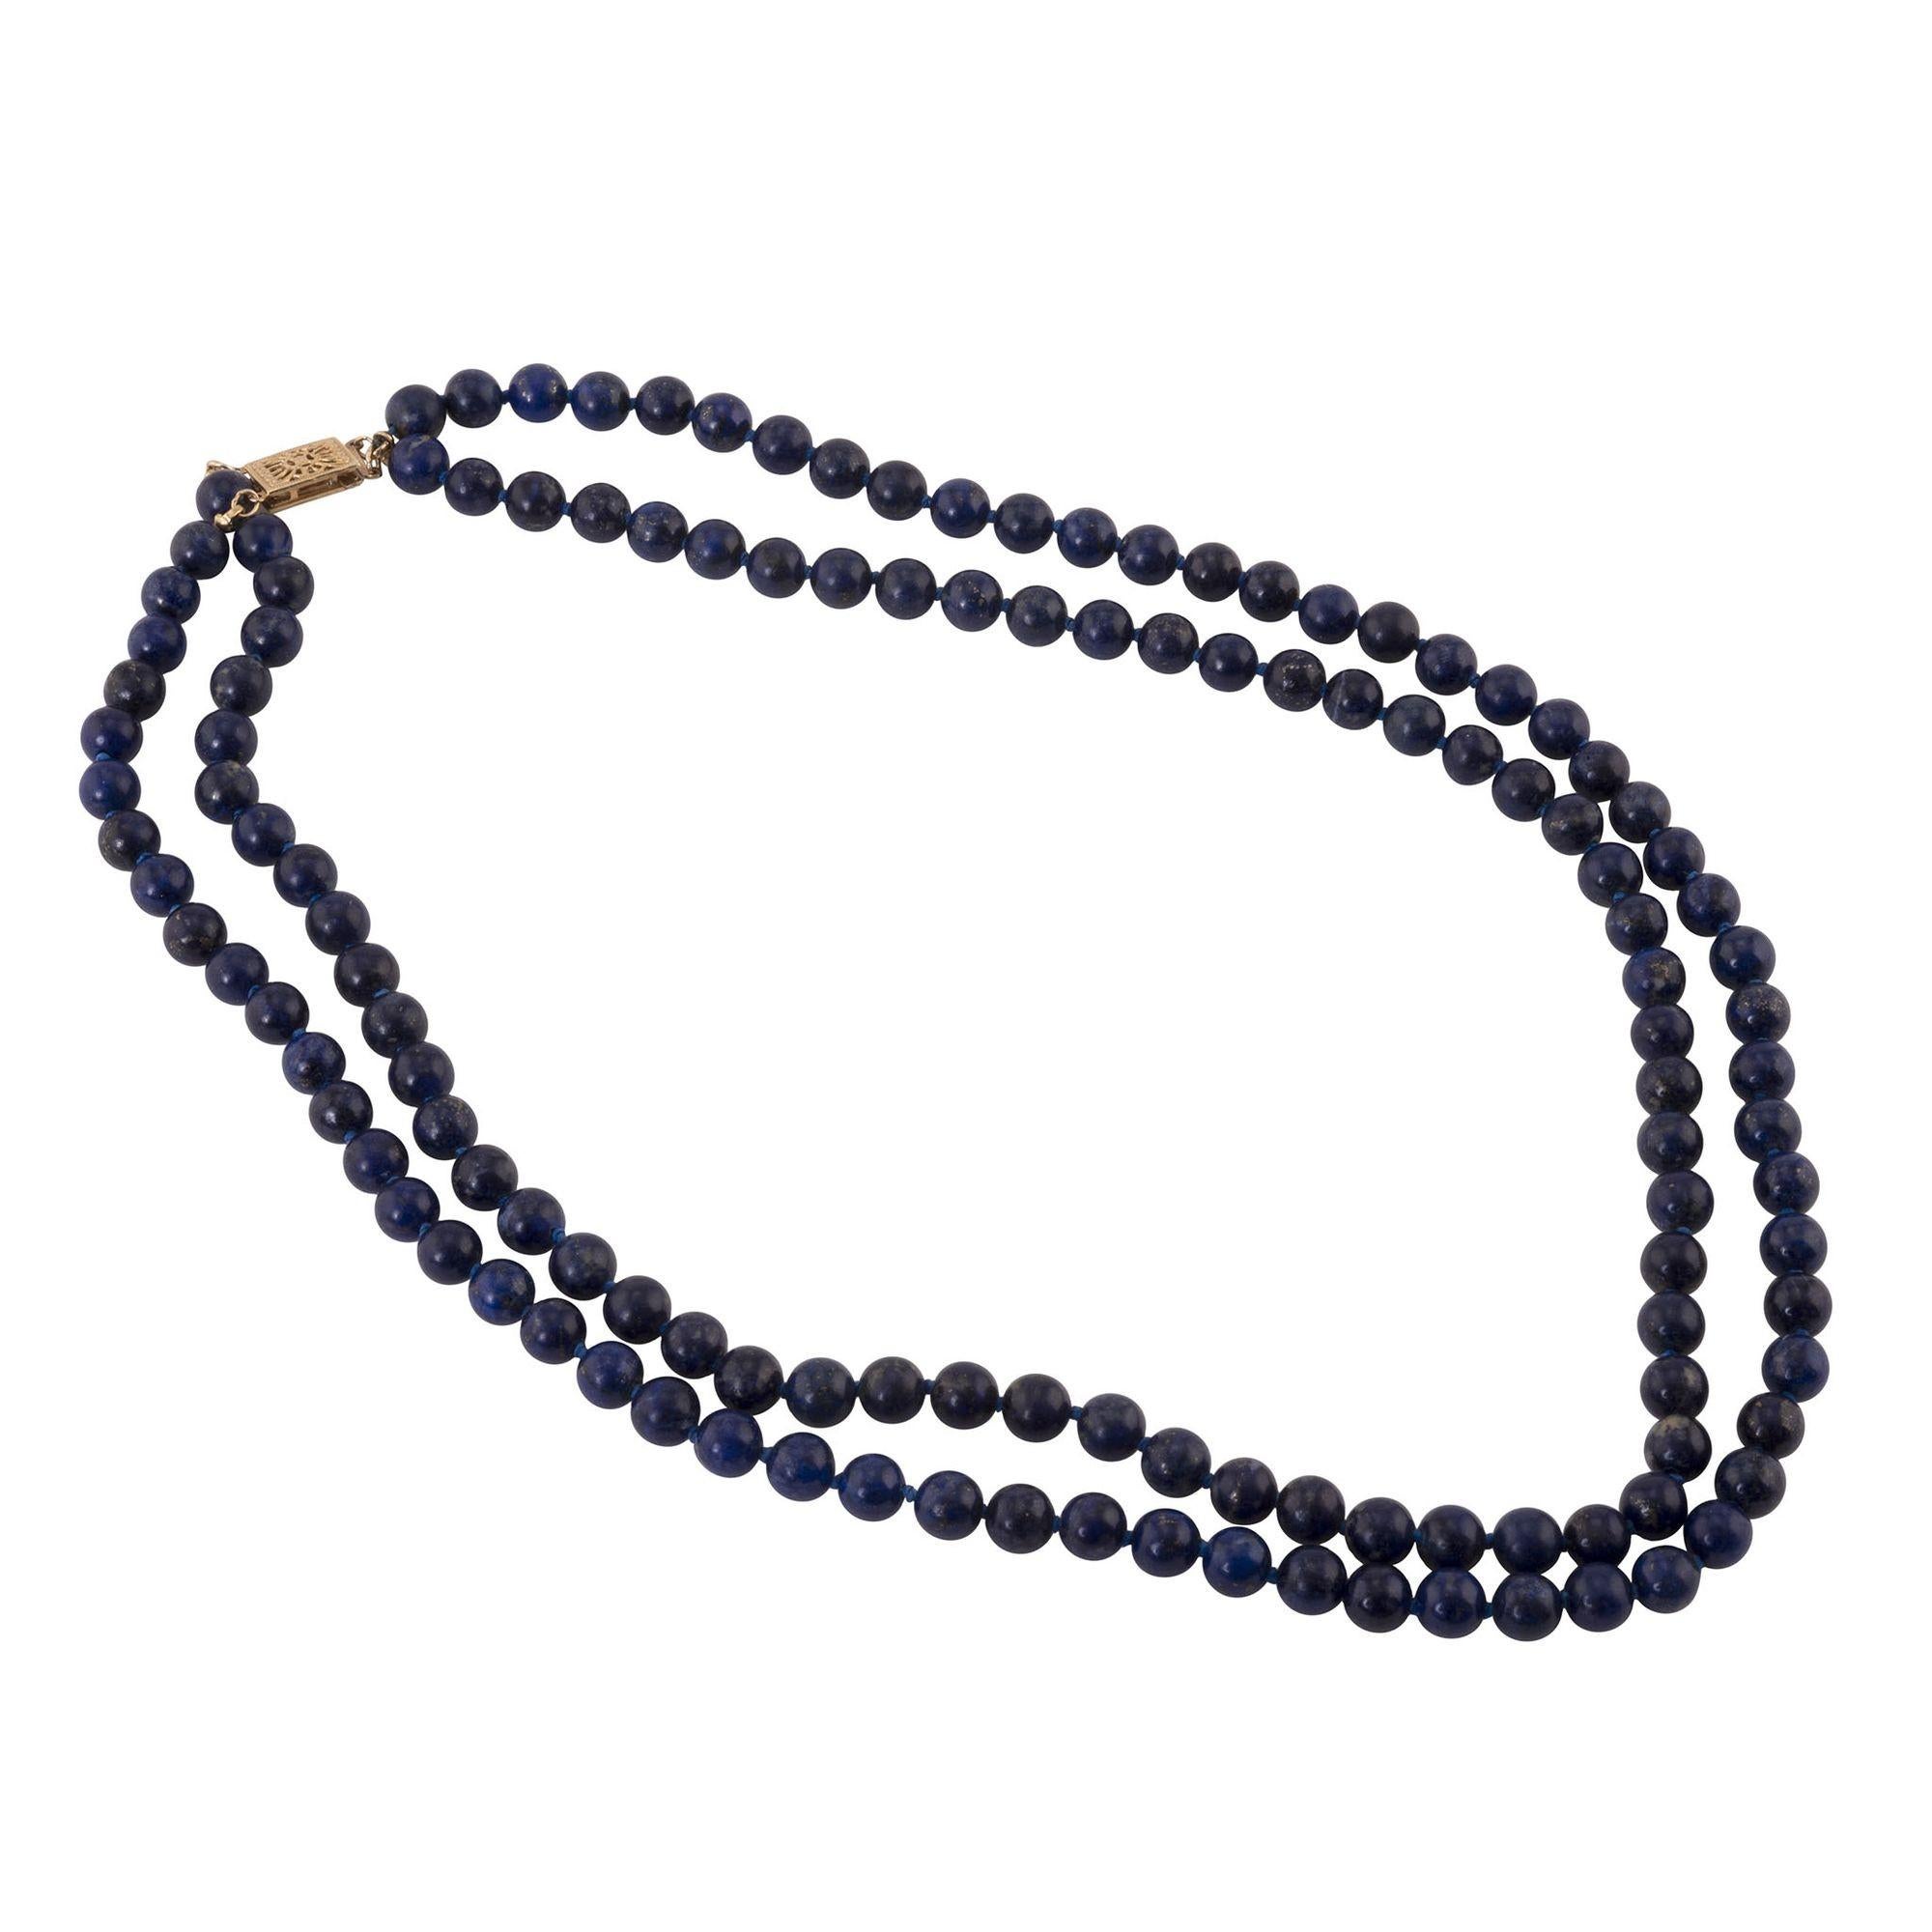 Estate doppelsträngige Lapisperlenkette. Diese Halskette besteht aus zwei Strängen geknoteter Lapis-Perlen mit einem Verschluss aus 14 Karat Gelbgold. [RHAW 59]

Abmessungen
18″L; 6,3mm Perlen